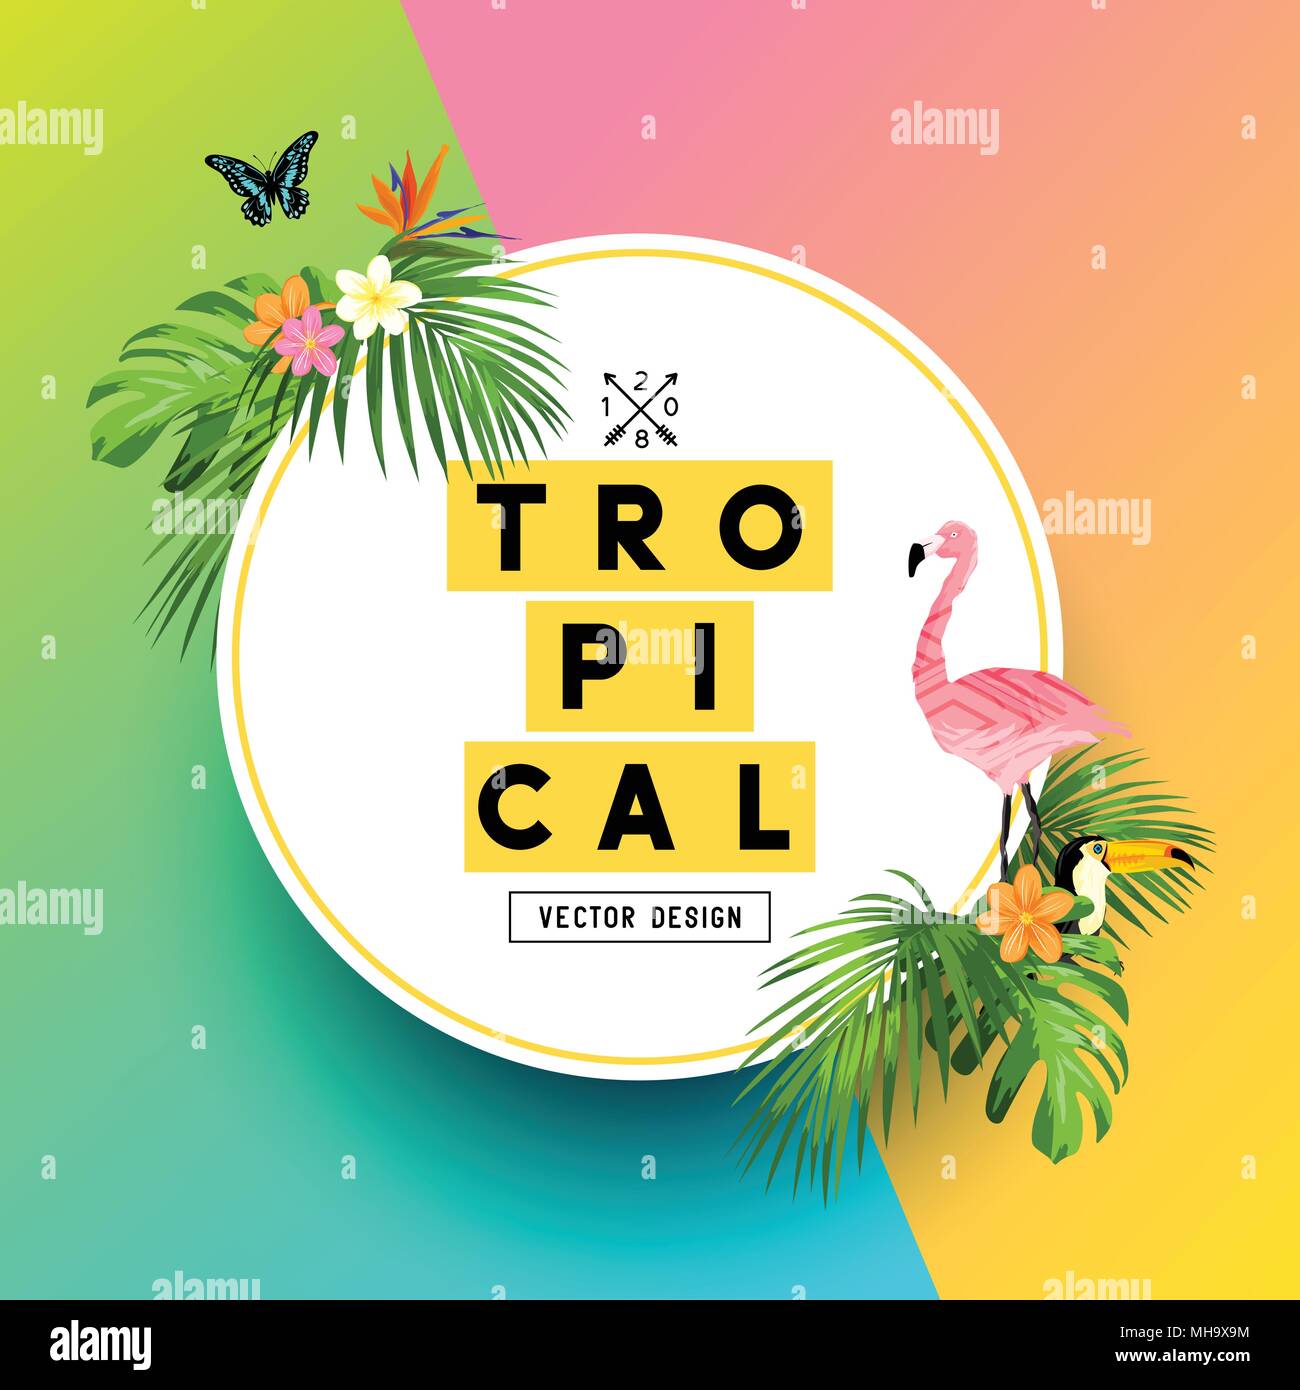 Einen hellen und bunten tropischen Sommer Design mit Plumerias, Flamingos und Dschungel Palmblättern. Vector Illustration. Stock Vektor